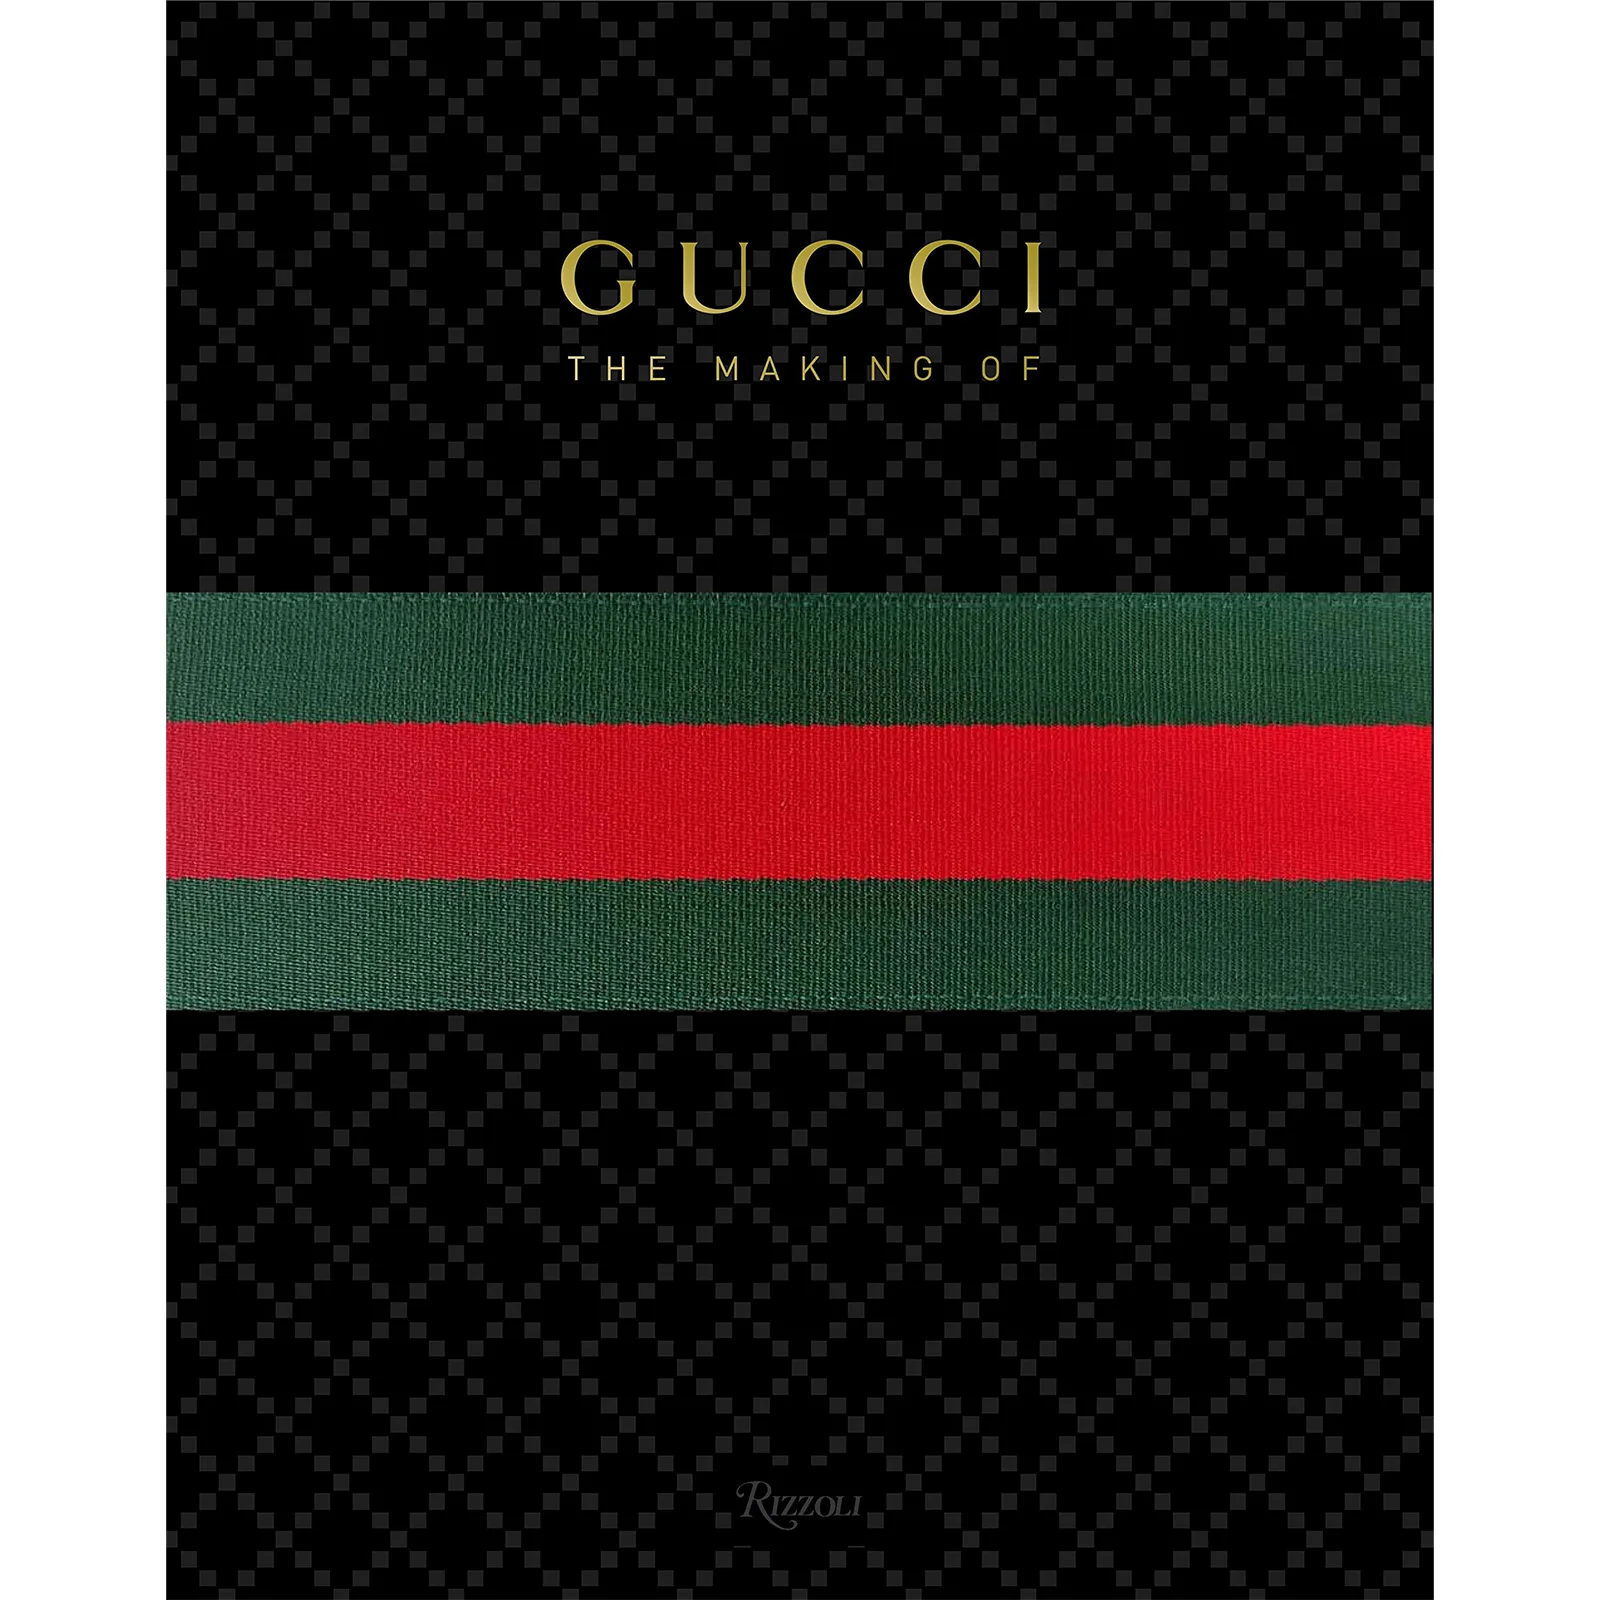 Rizzoli: Gucci Image 1